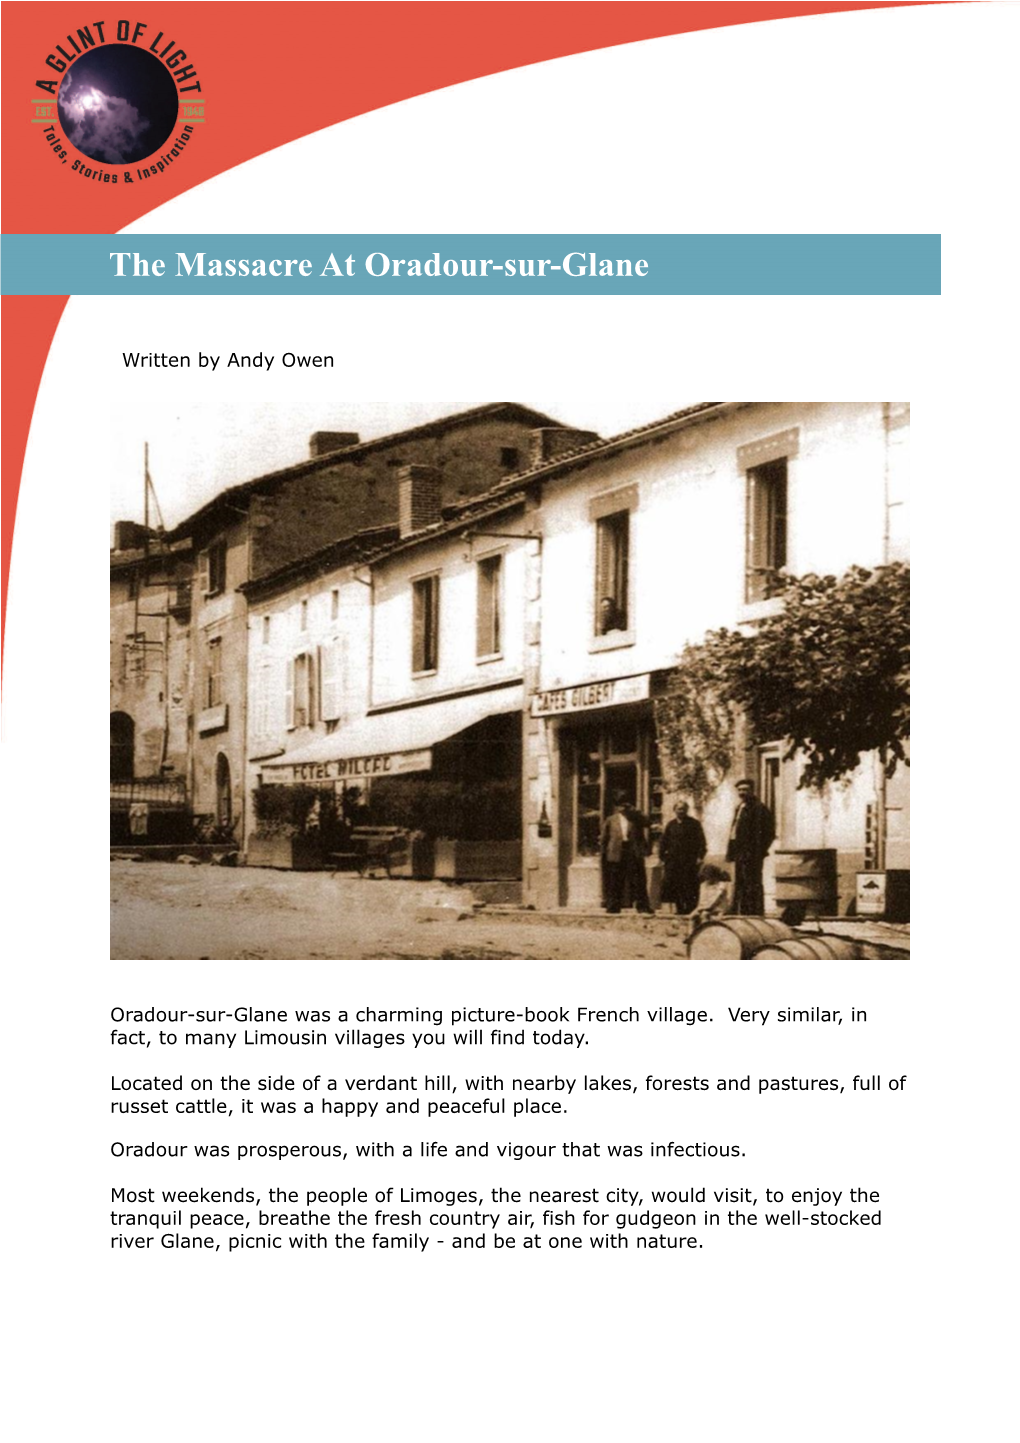 The Massacre at Oradour-Sur-Glane